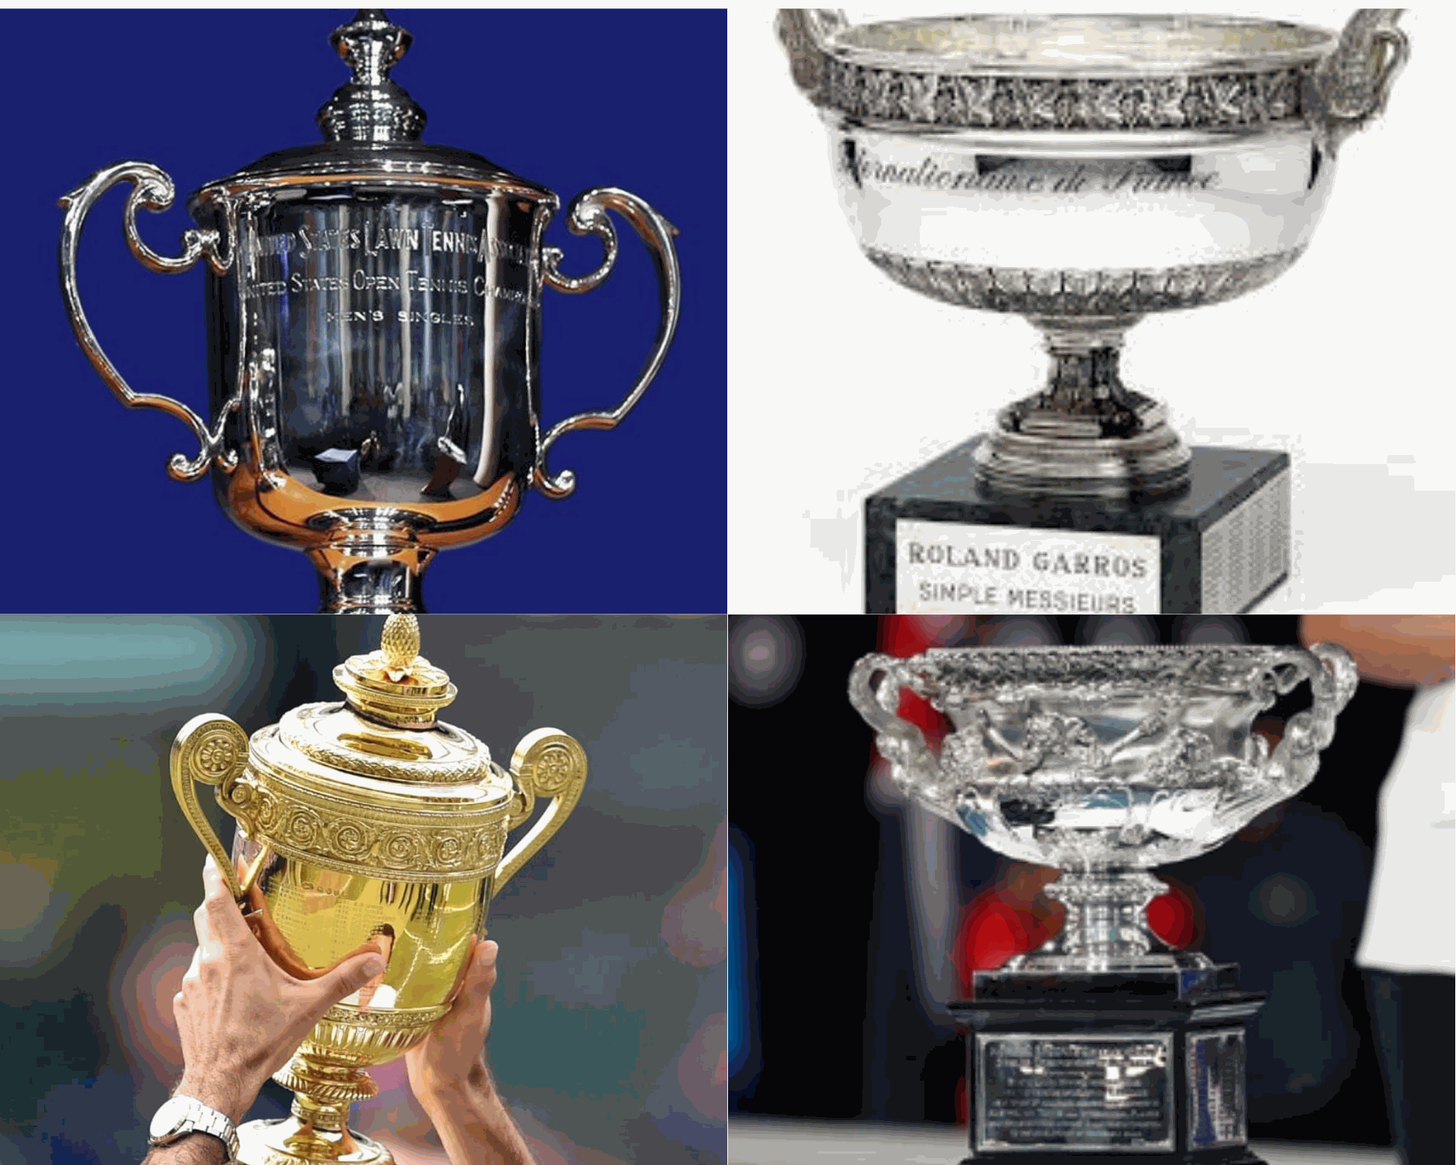 Slam Champion Trophy & Achievement Guide